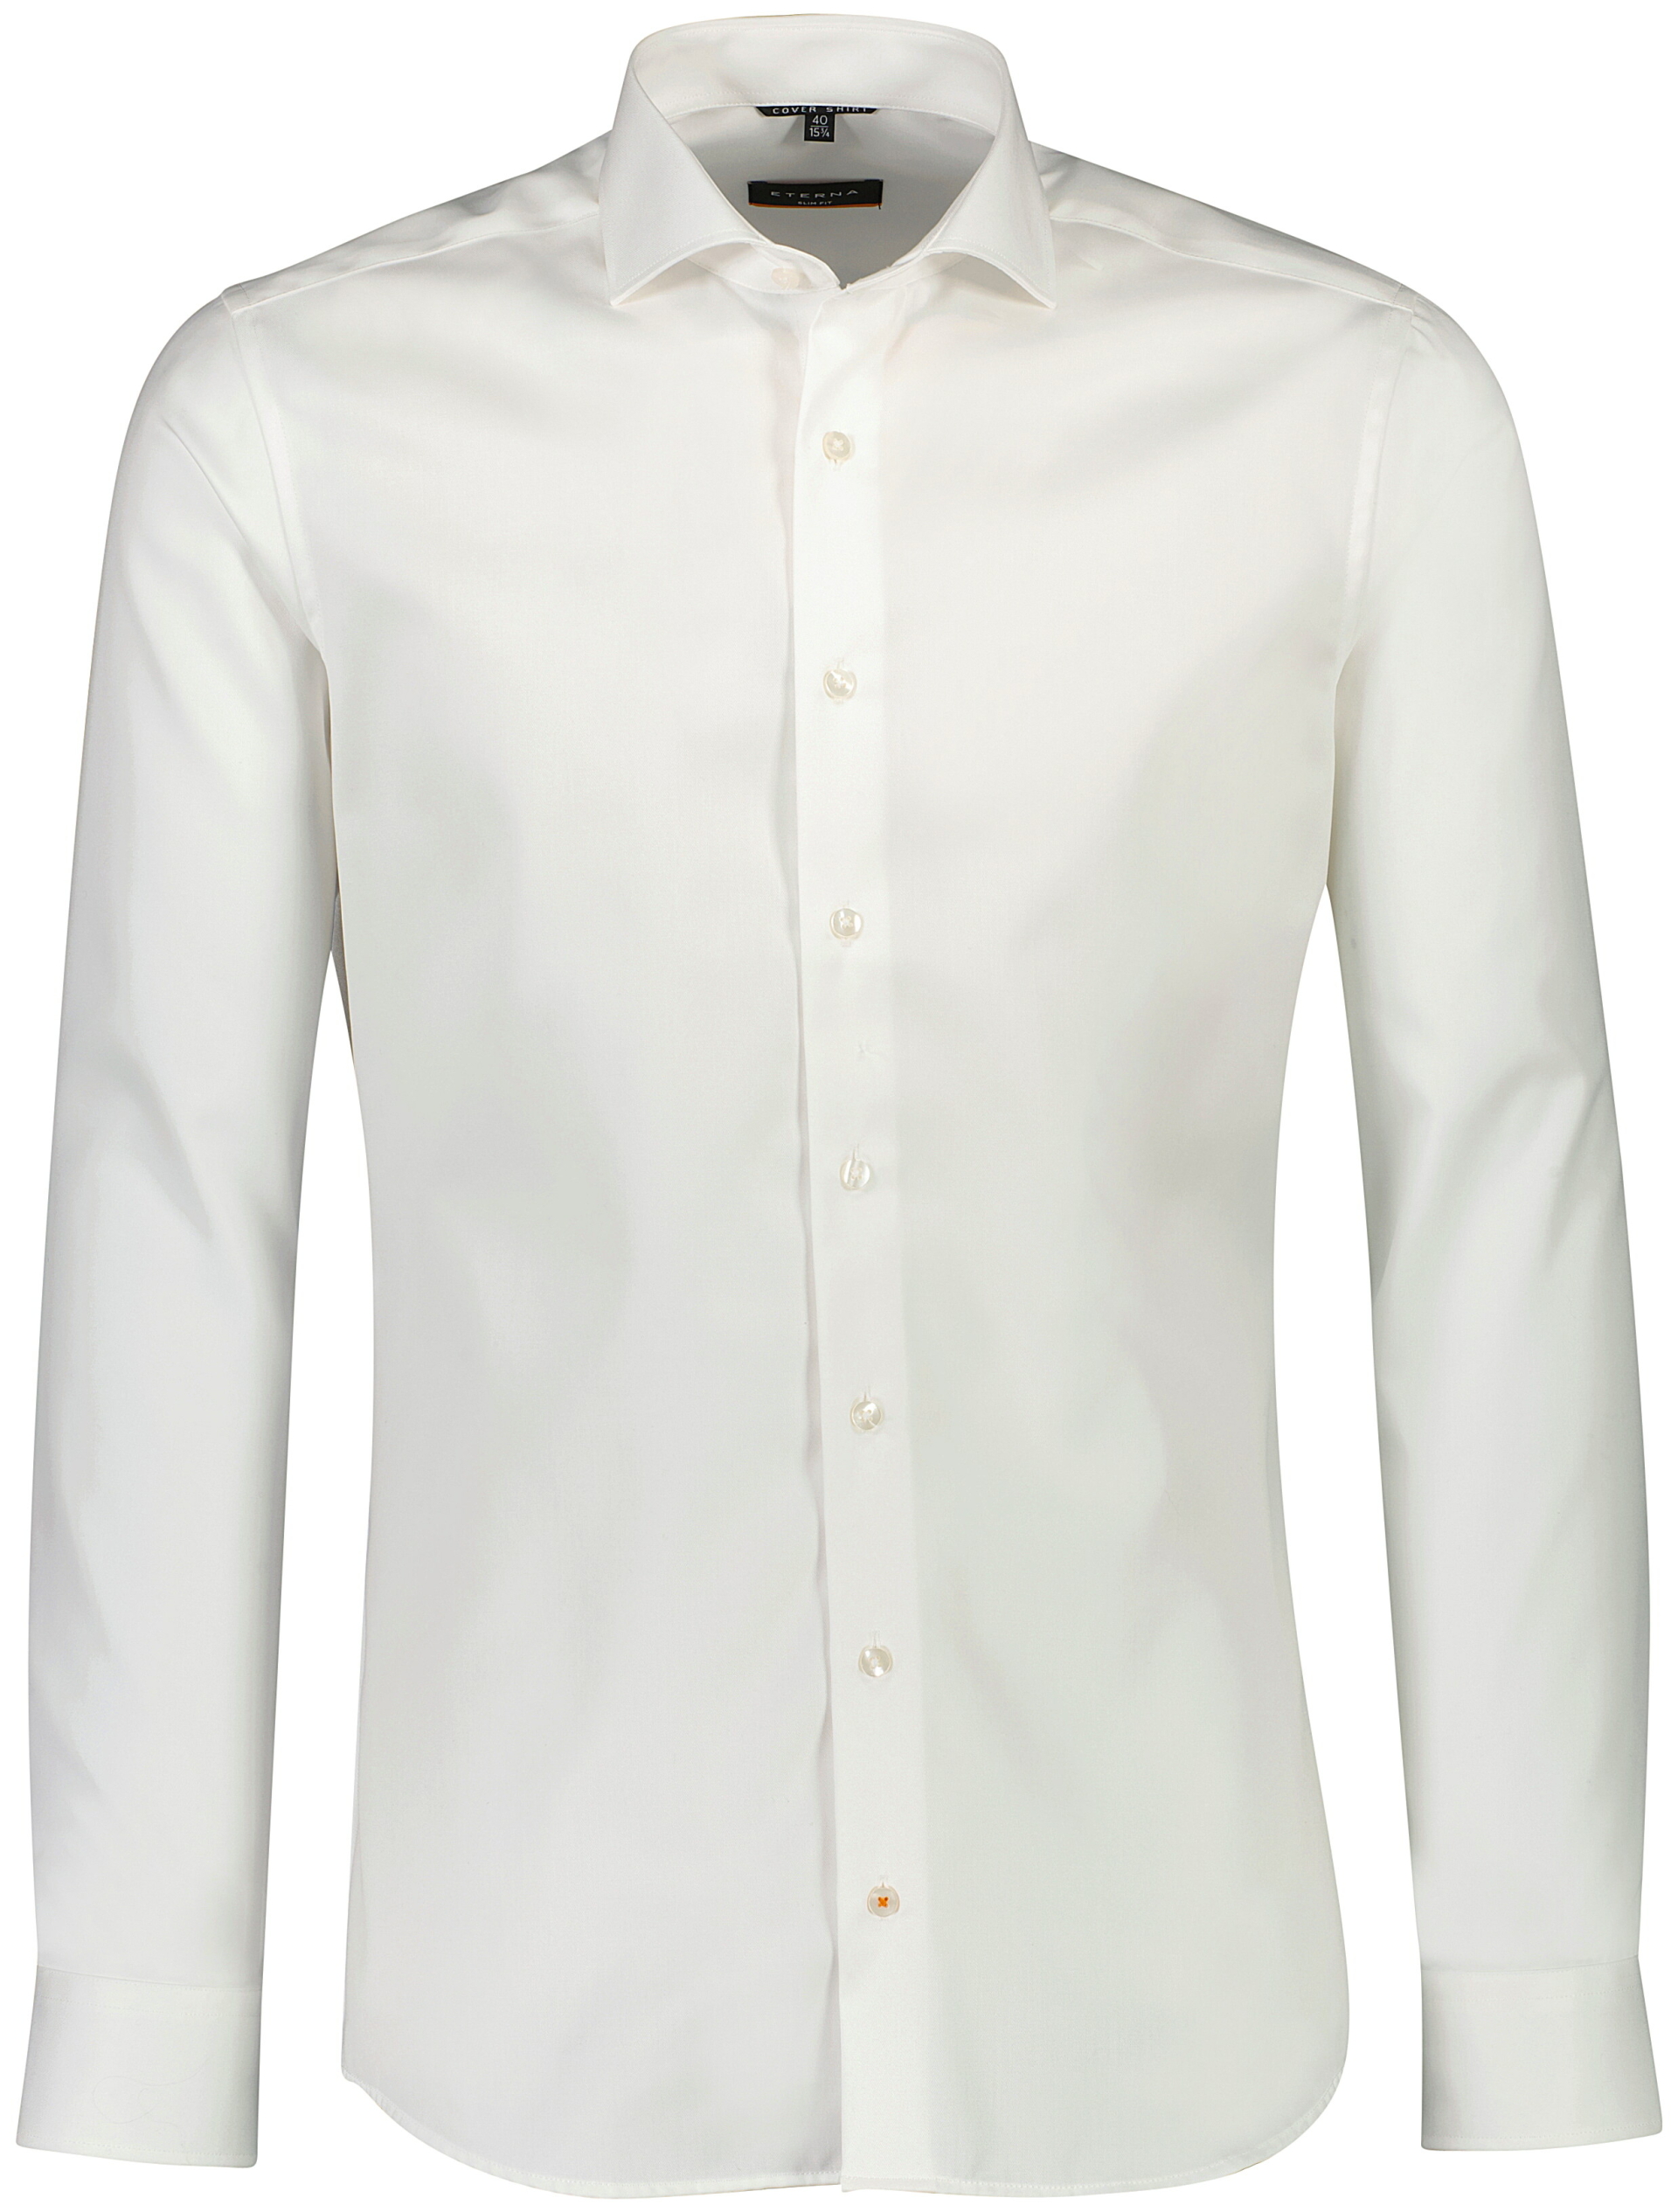 Eterna Business skjorte hvid / 21 off white